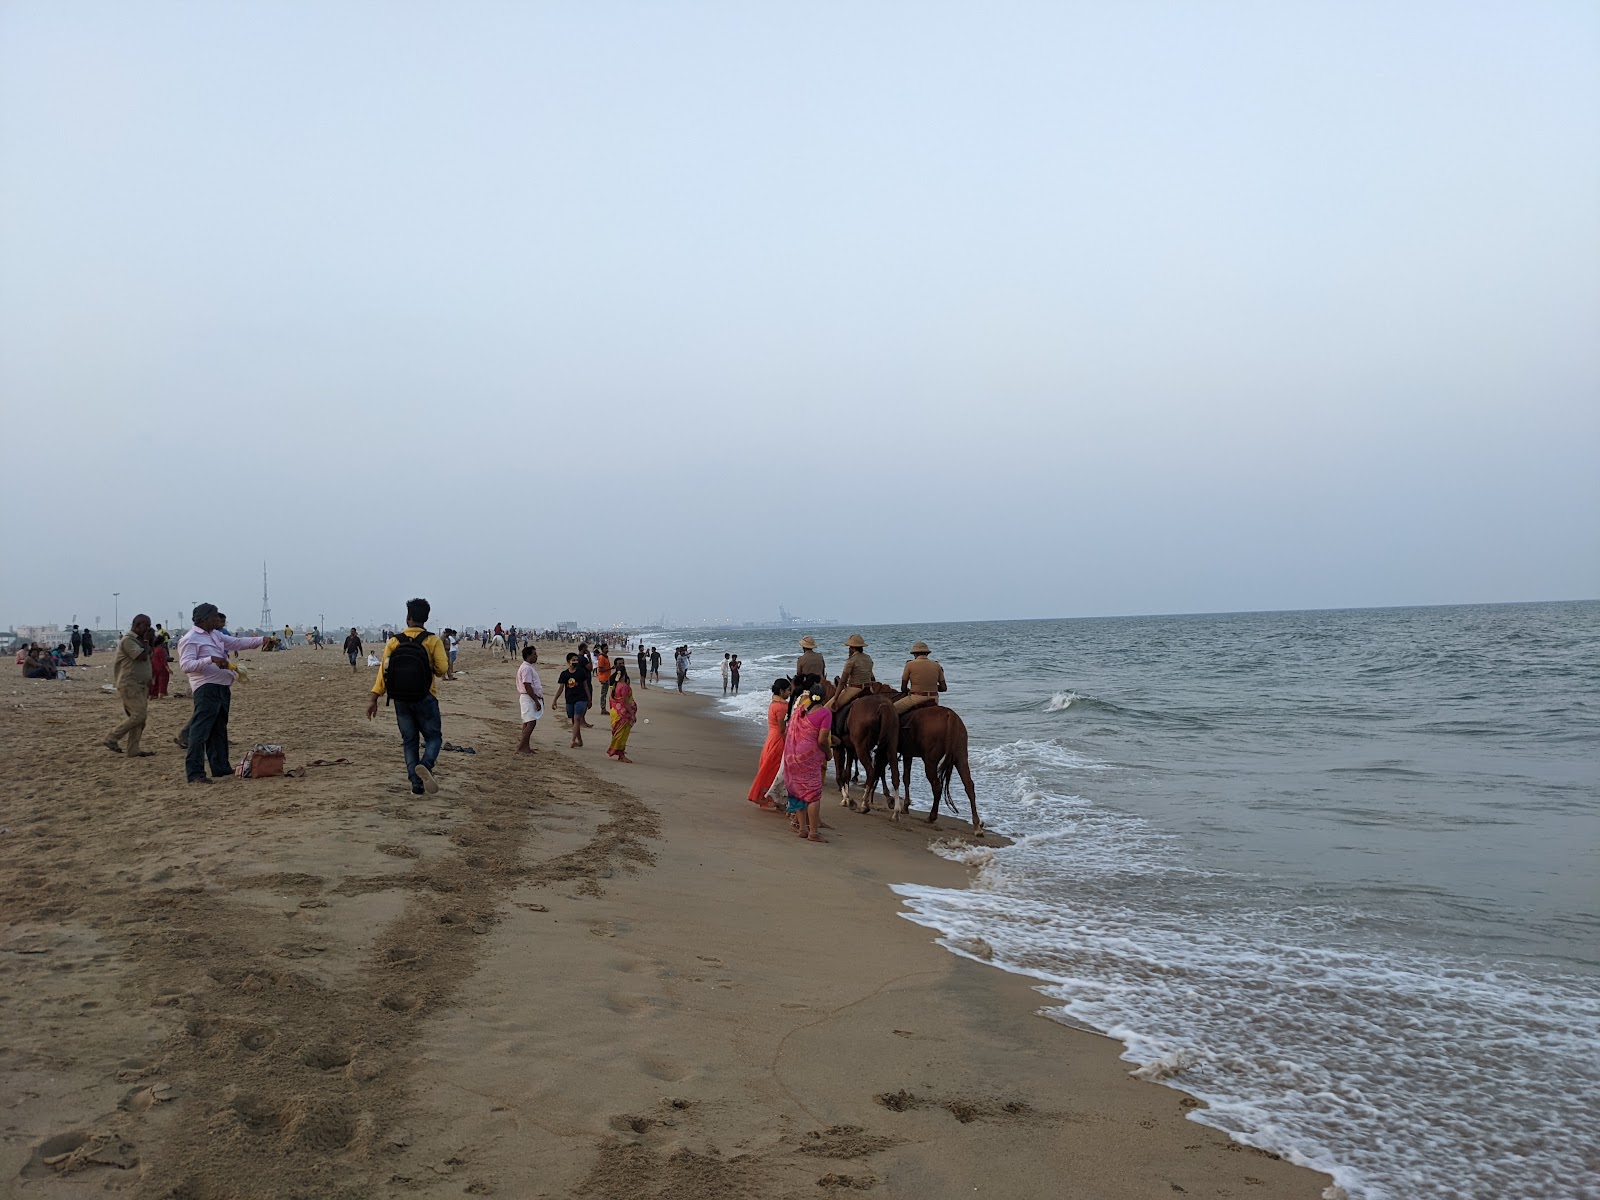 Gandhi Beach'in fotoğrafı geniş plaj ile birlikte